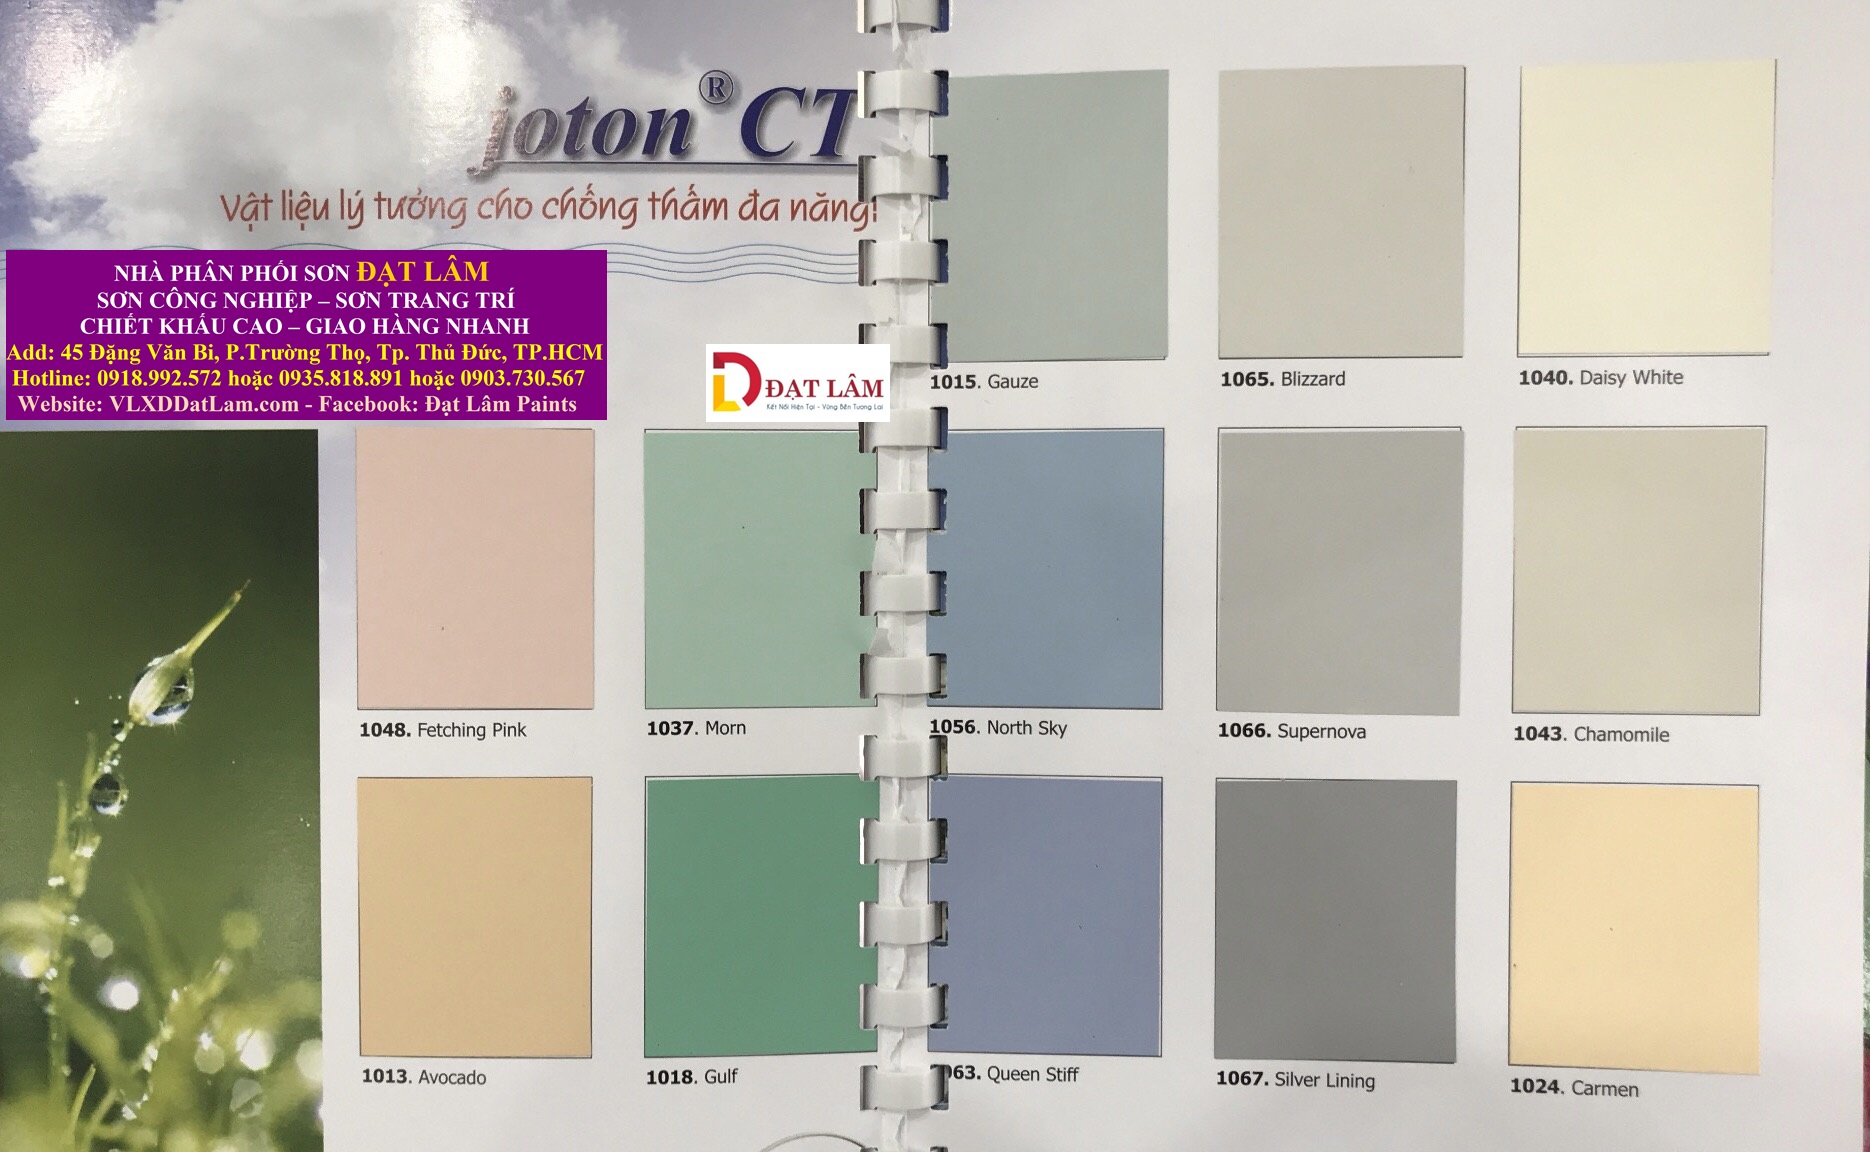 Bảng màu chống thấm gốc dầu JOTON CT mang đến cho bạn sự lựa chọn đa dạng và độc đáo cho công trình của bạn. Hình ảnh liên quan đến bảng màu sẽ cho bạn thấy các tông màu đẹp mắt và sự năng động của sản phẩm này. Hãy xem ngay!